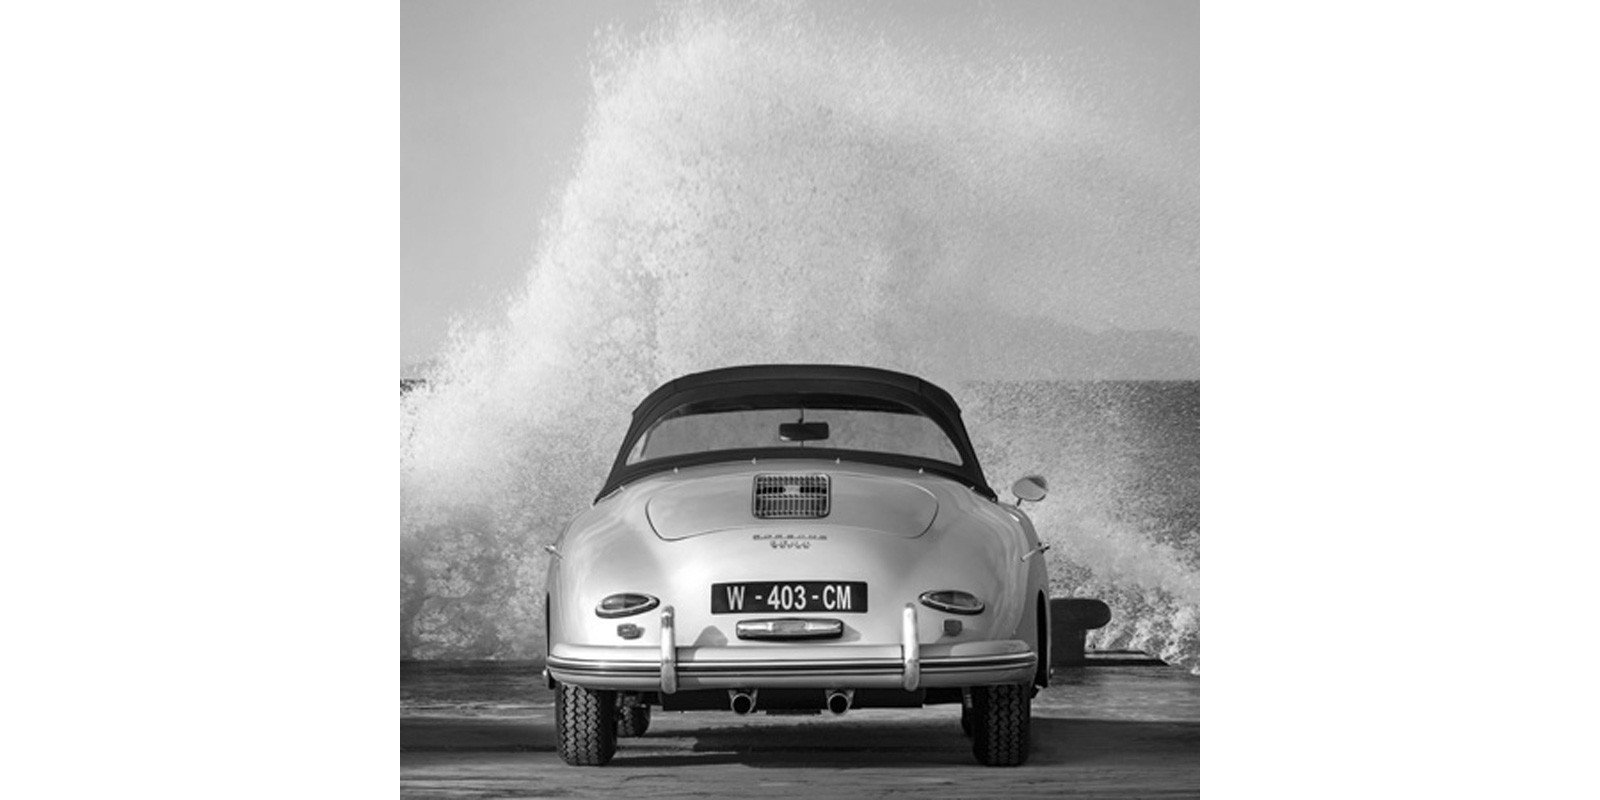 Gasoline Images - Ocean Waves Breaking on Vintage Beauties (BW detail 2)